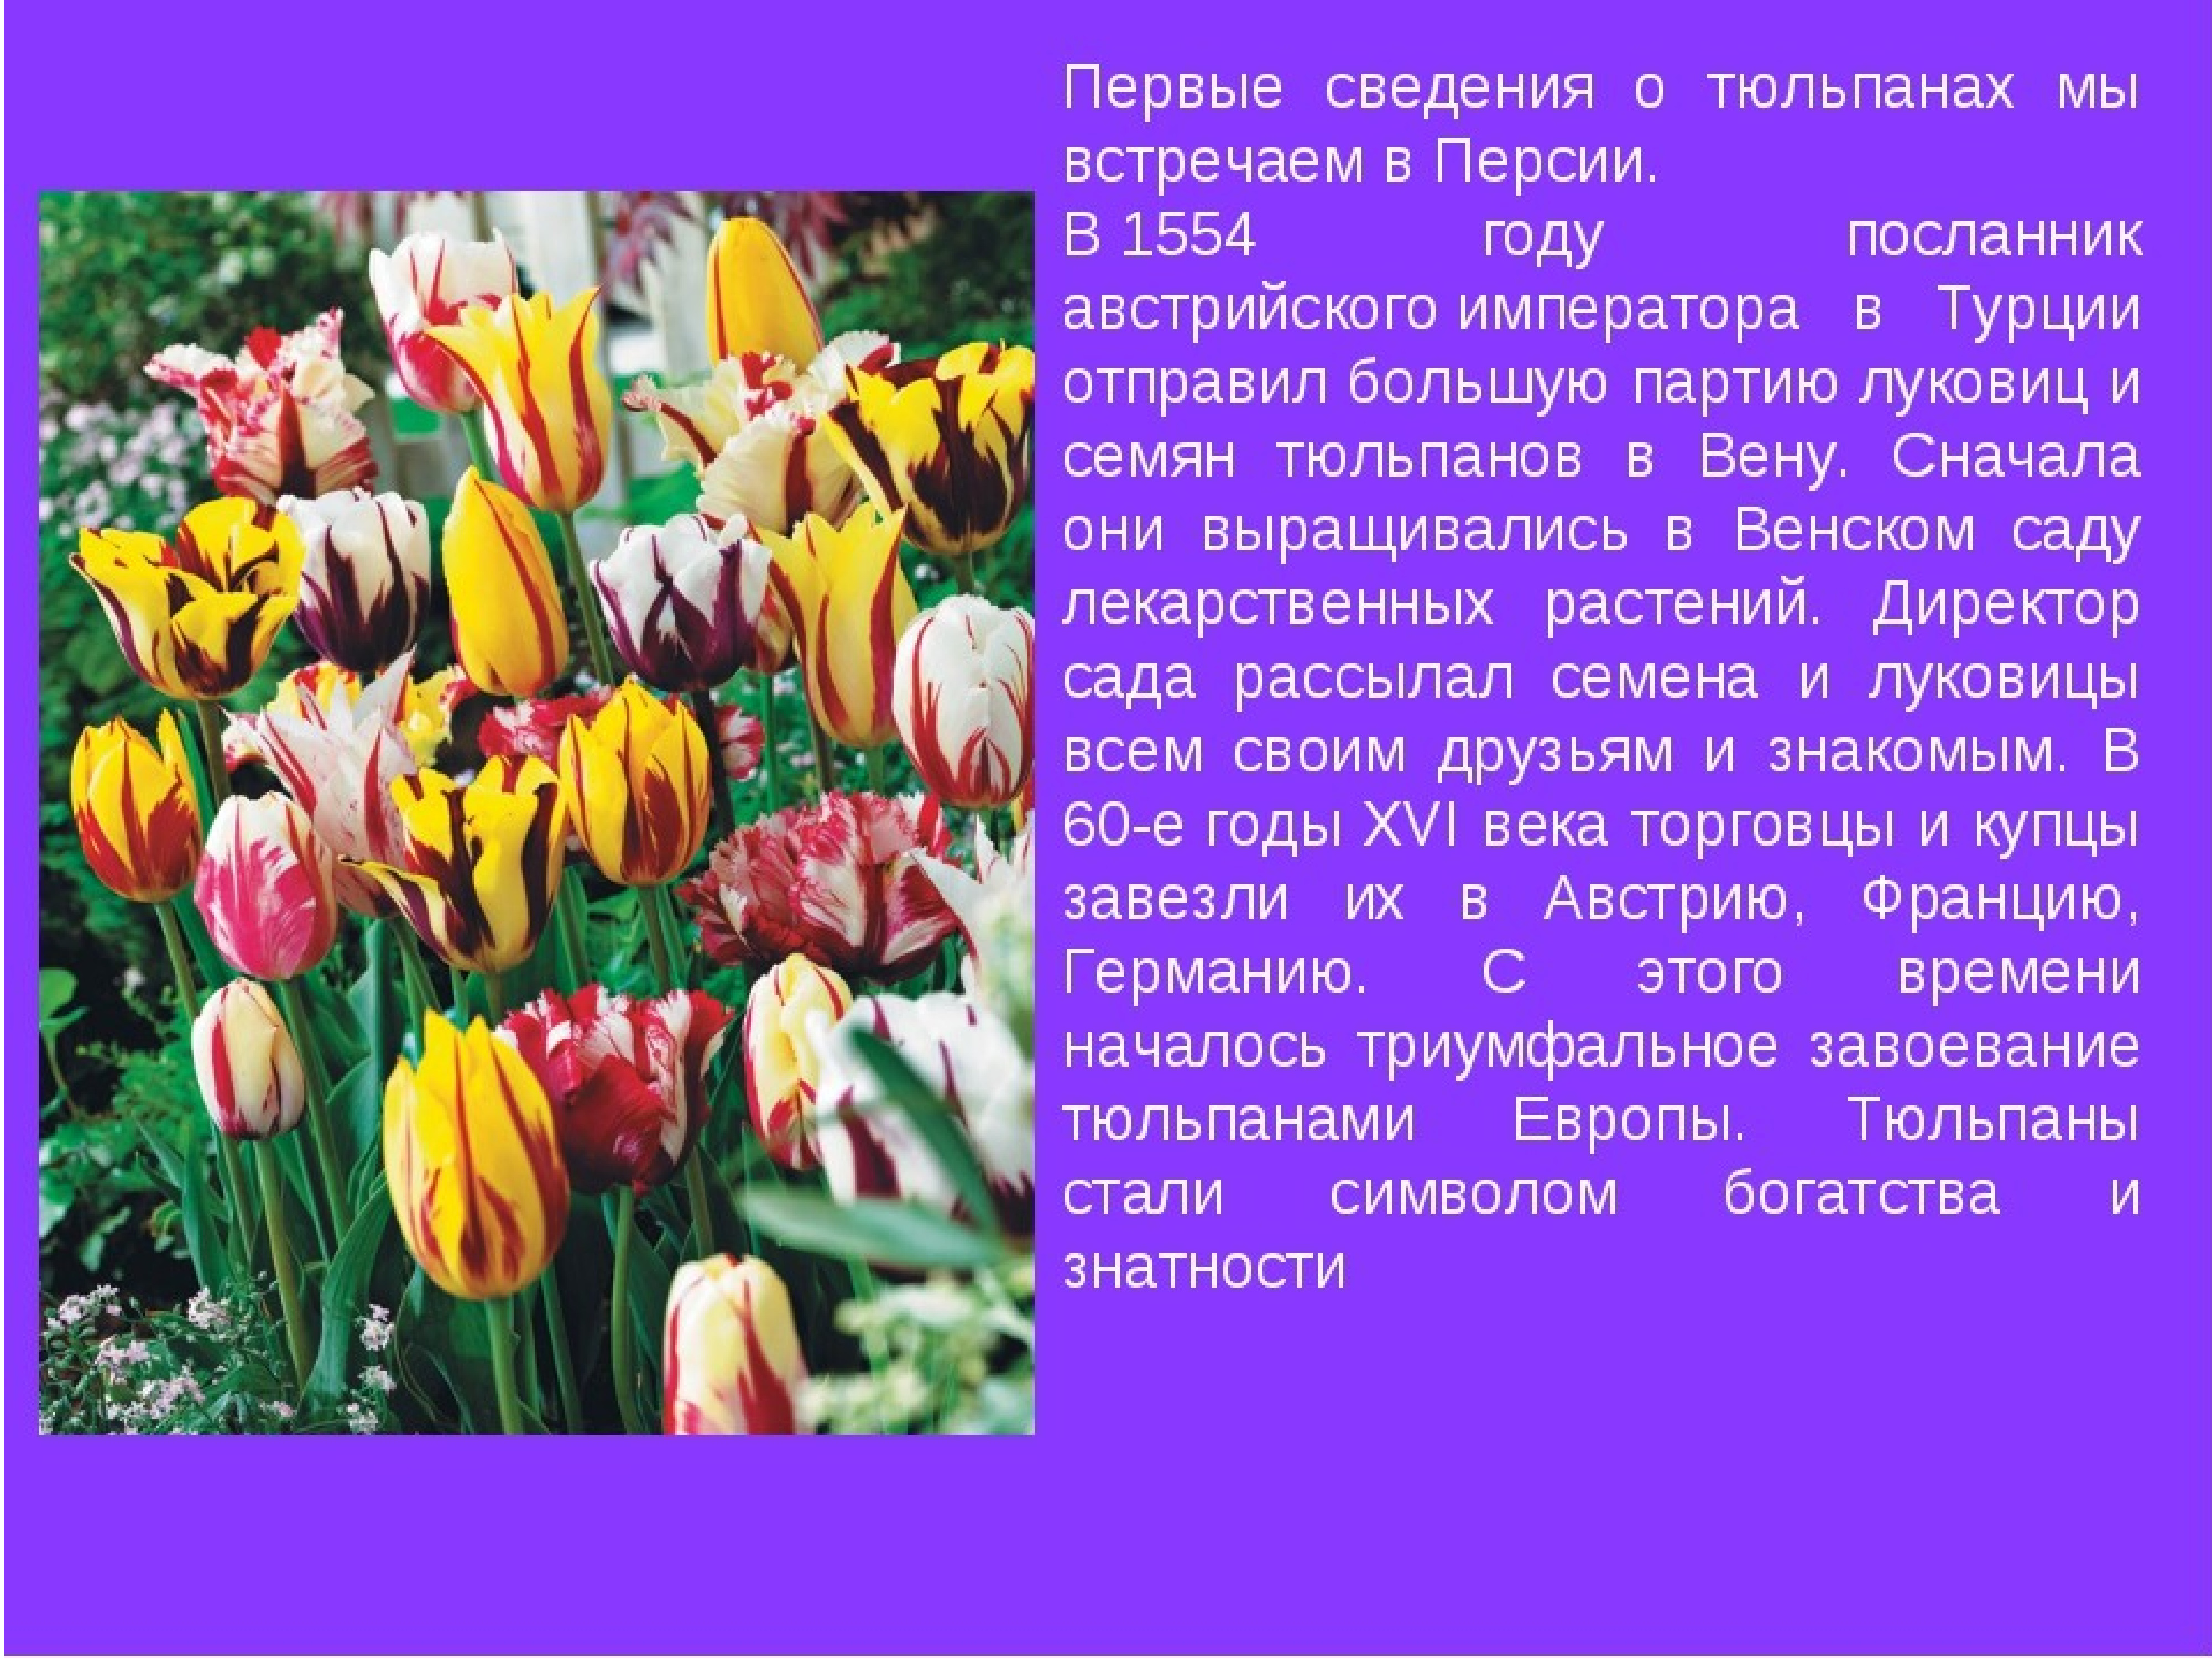 Тюльпан перфекционист фото и описание